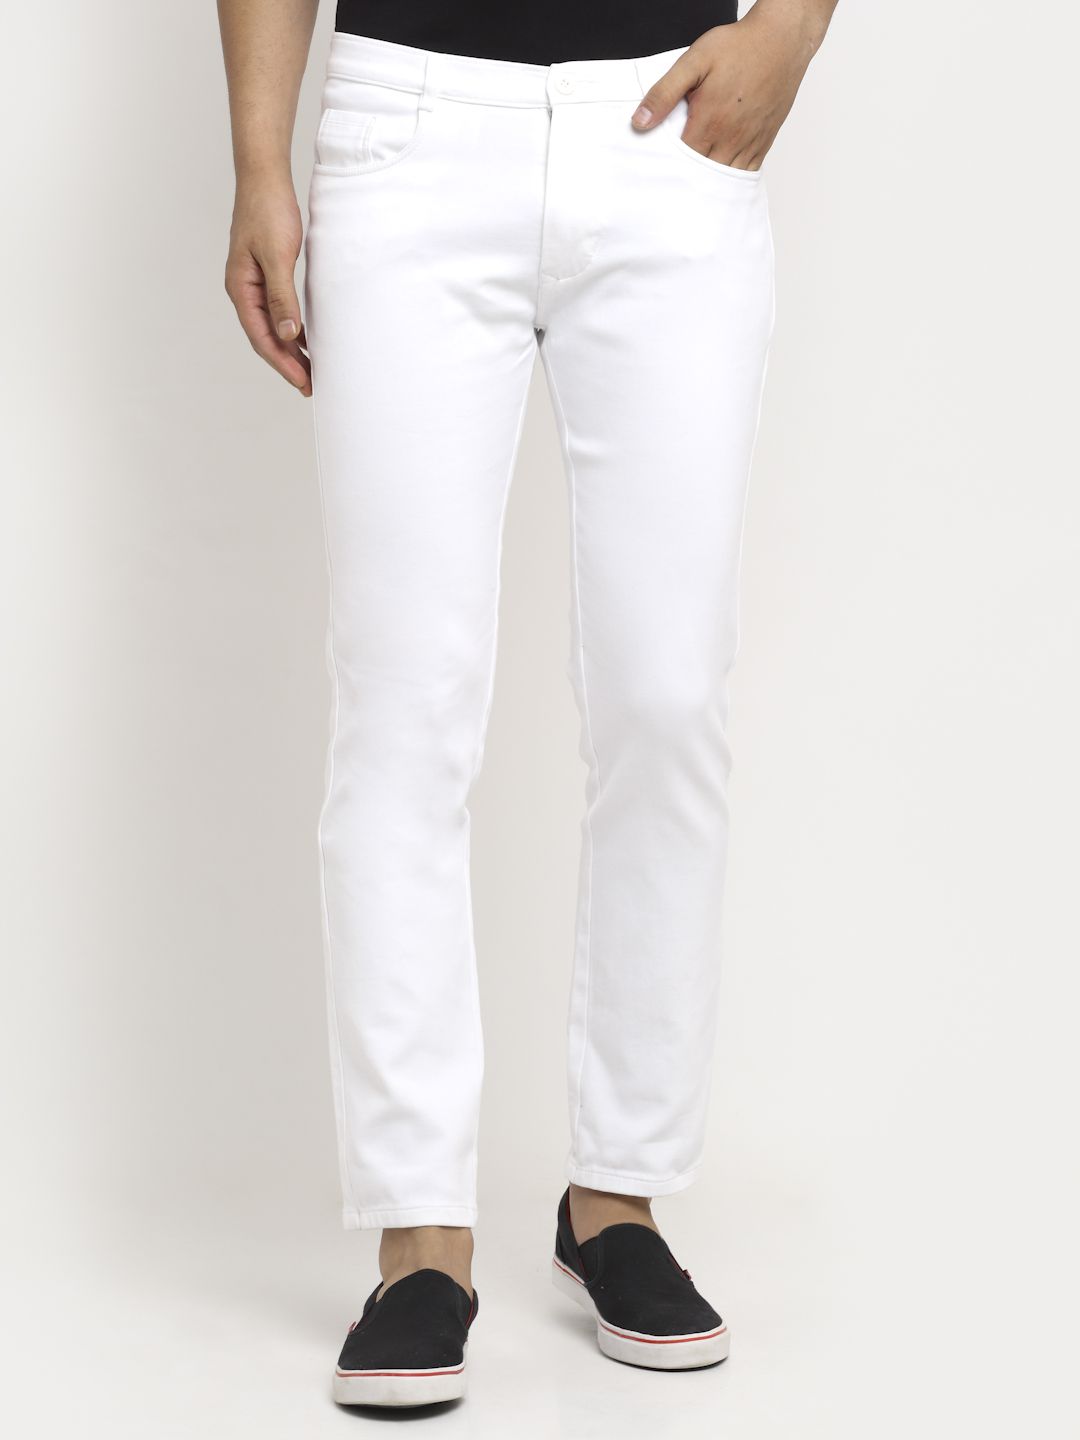     			Rodamo Slim Fit Basic Men's Jeans - White ( Pack of 1 )